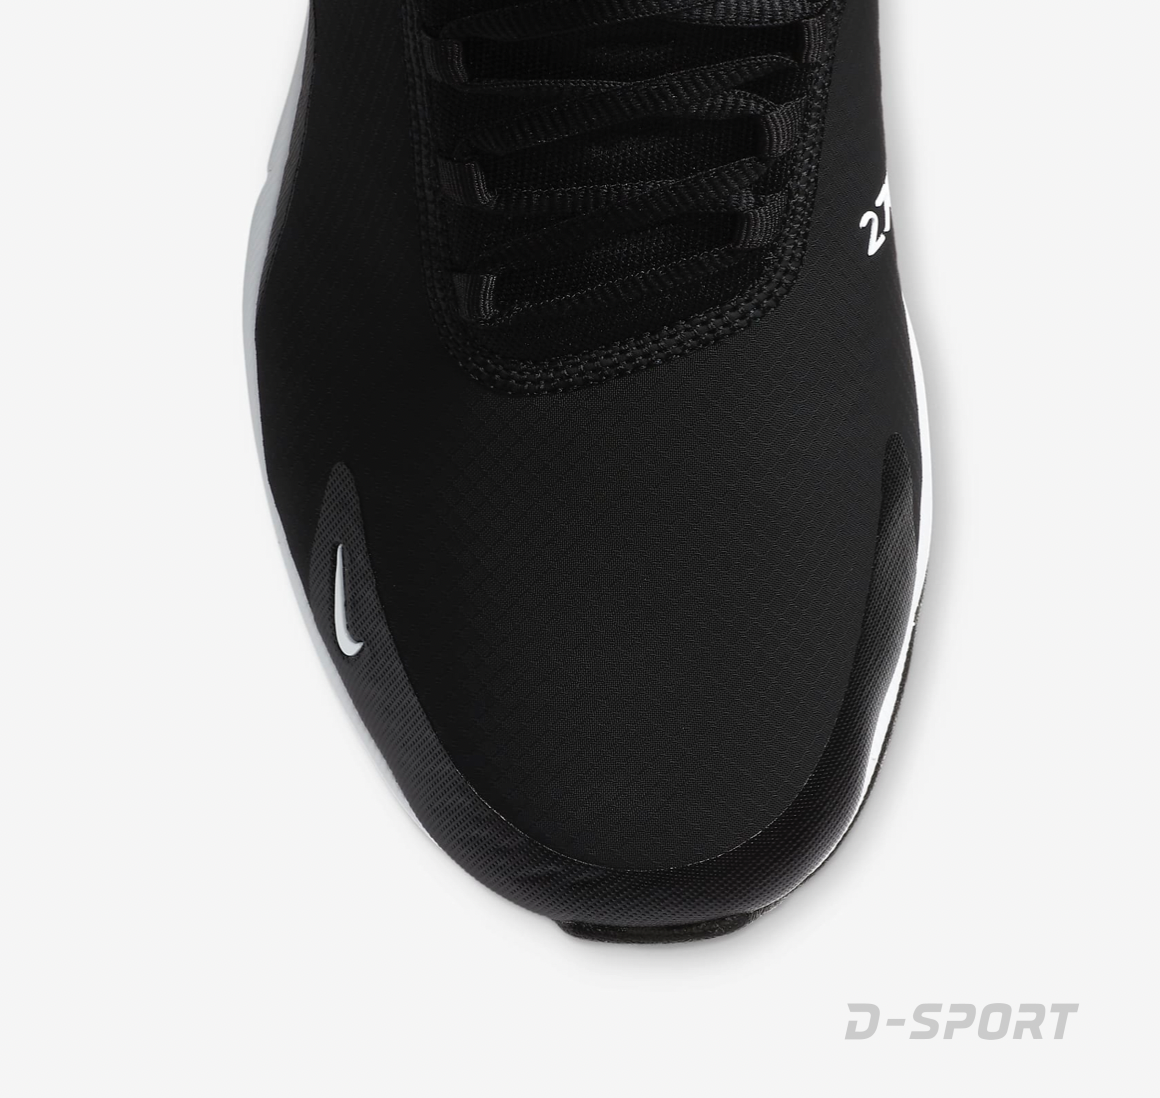 Nike Air Max 270 G